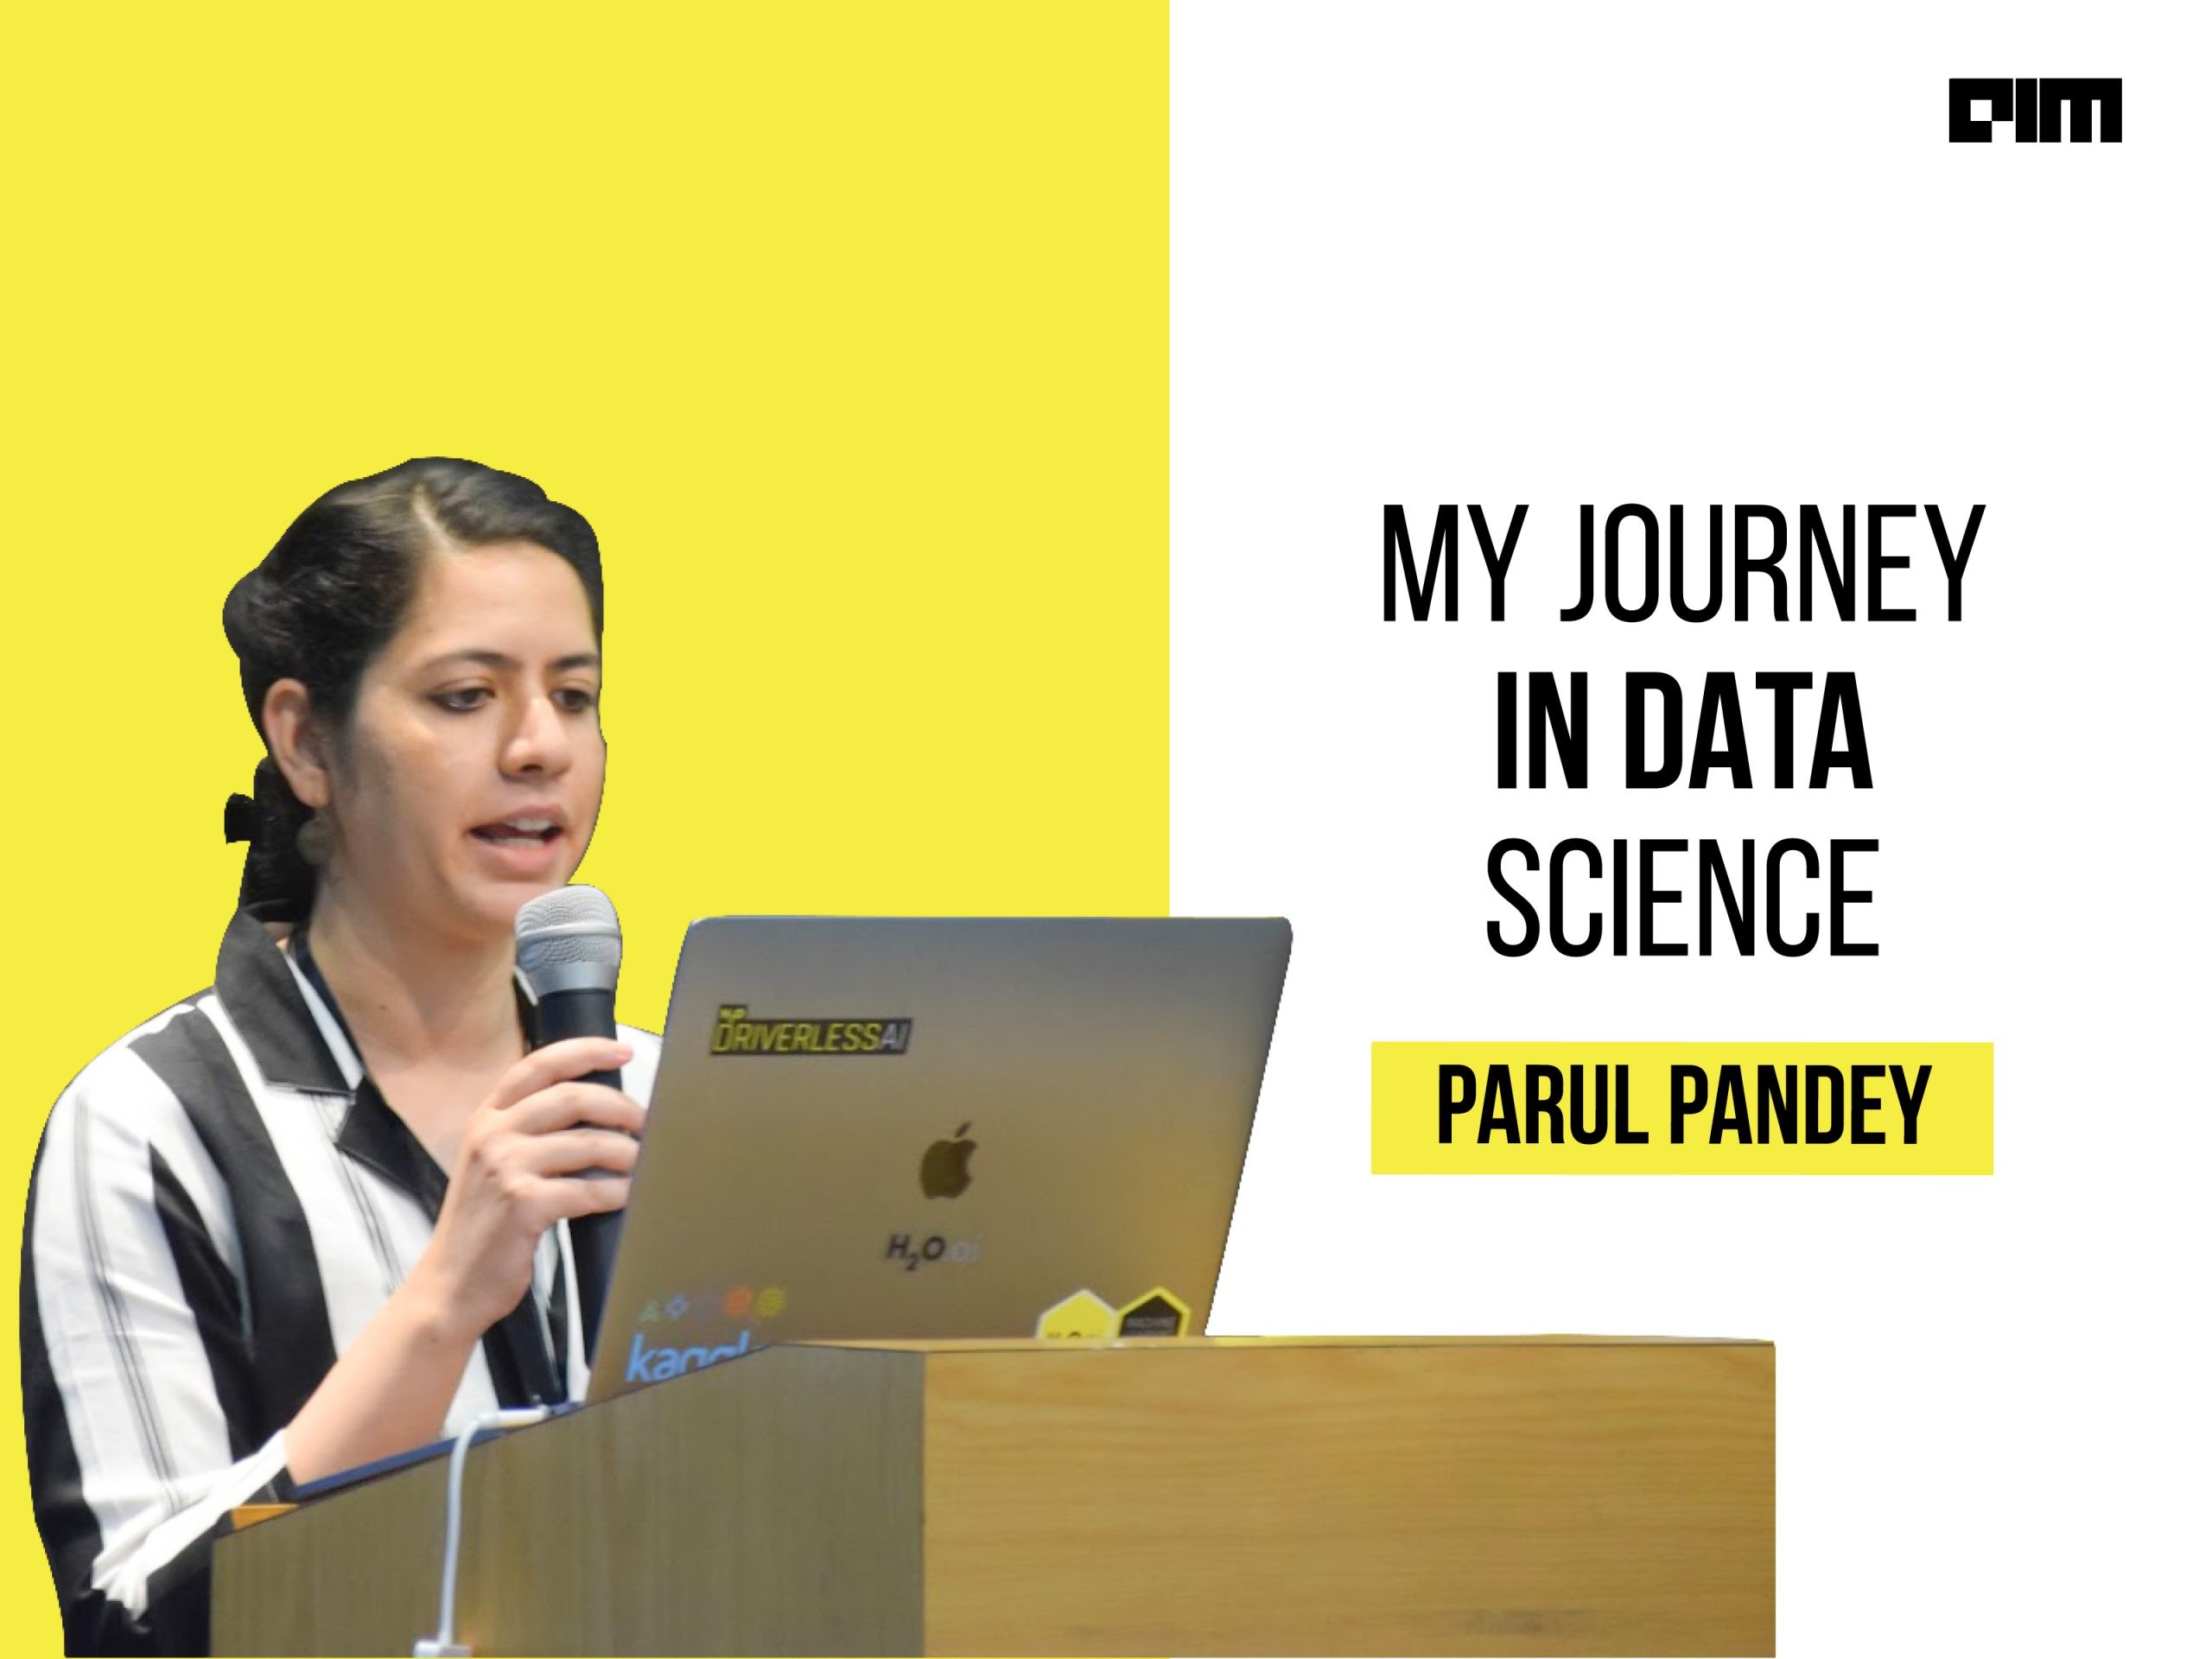 Data Scientist Parul Pandey